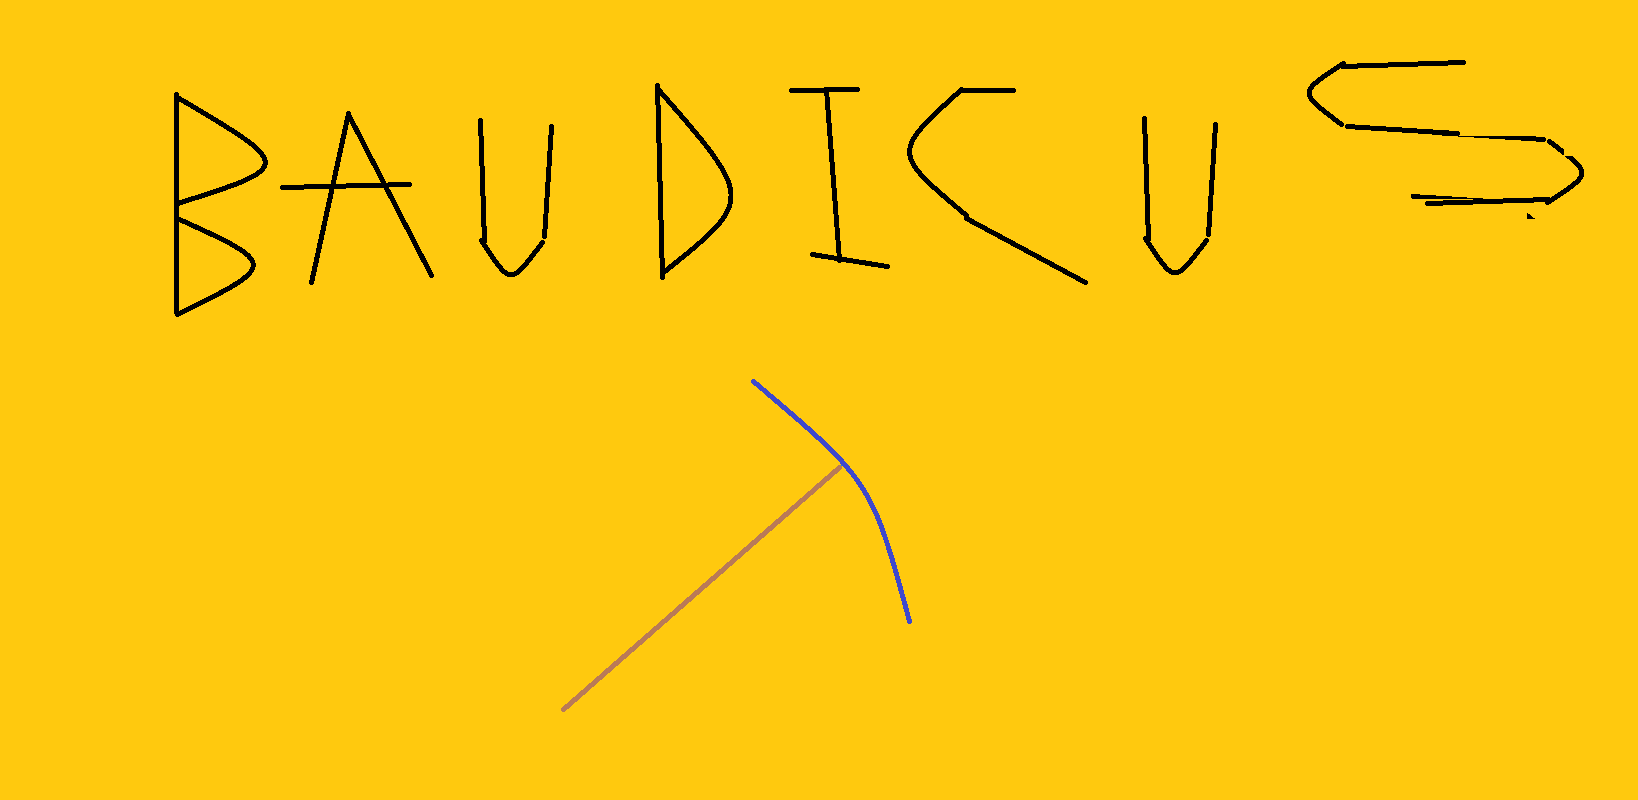 Baudicus